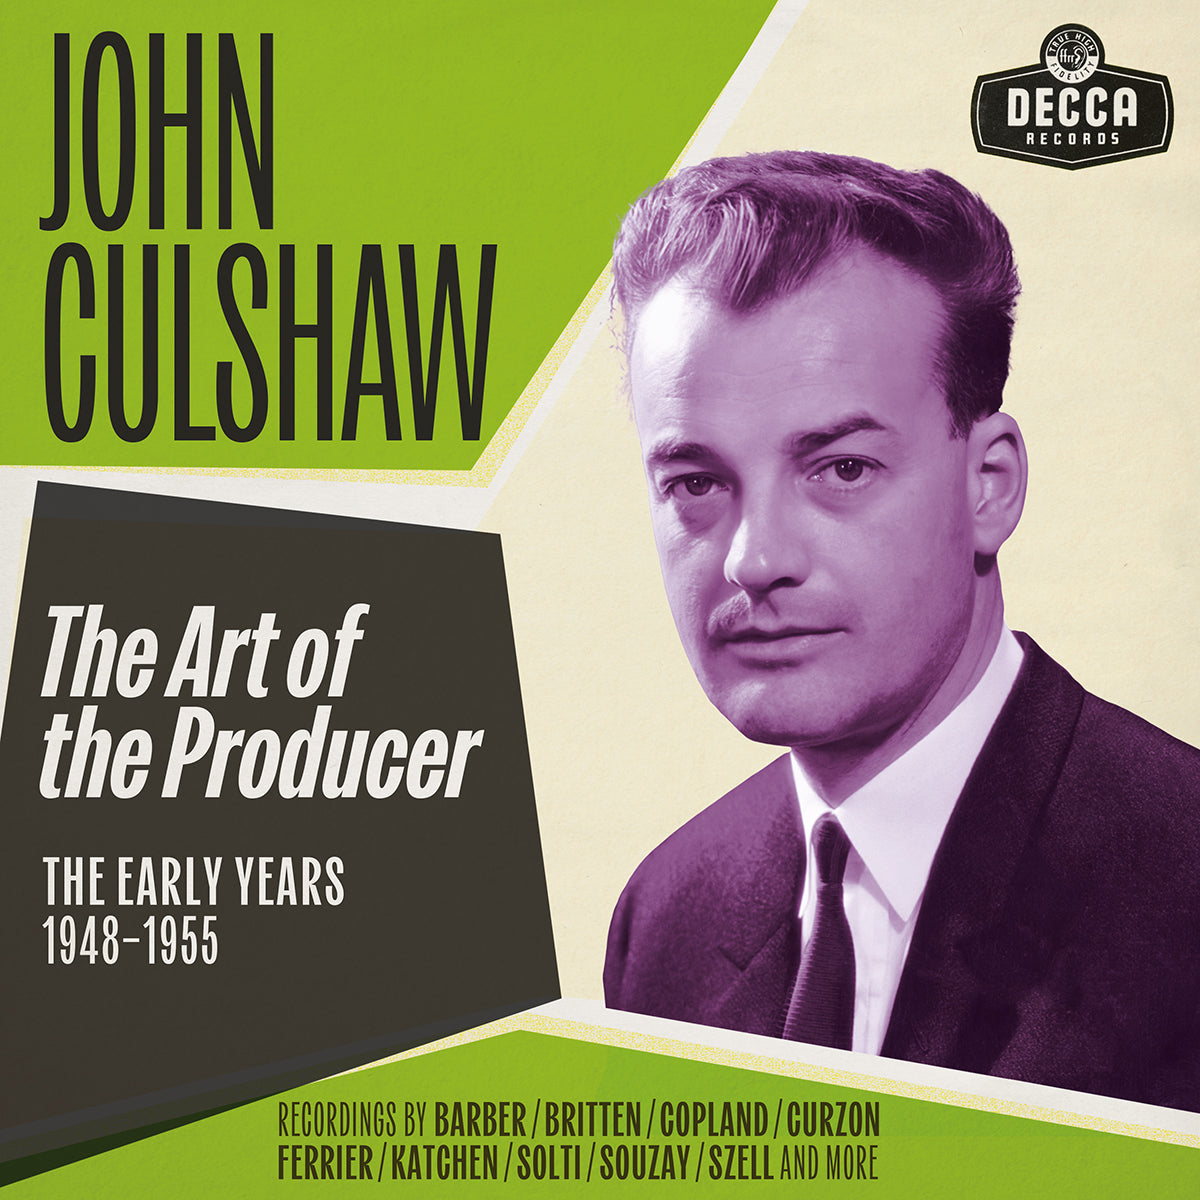 John Culshaw - The Art of the Producer: 12CD Boxset